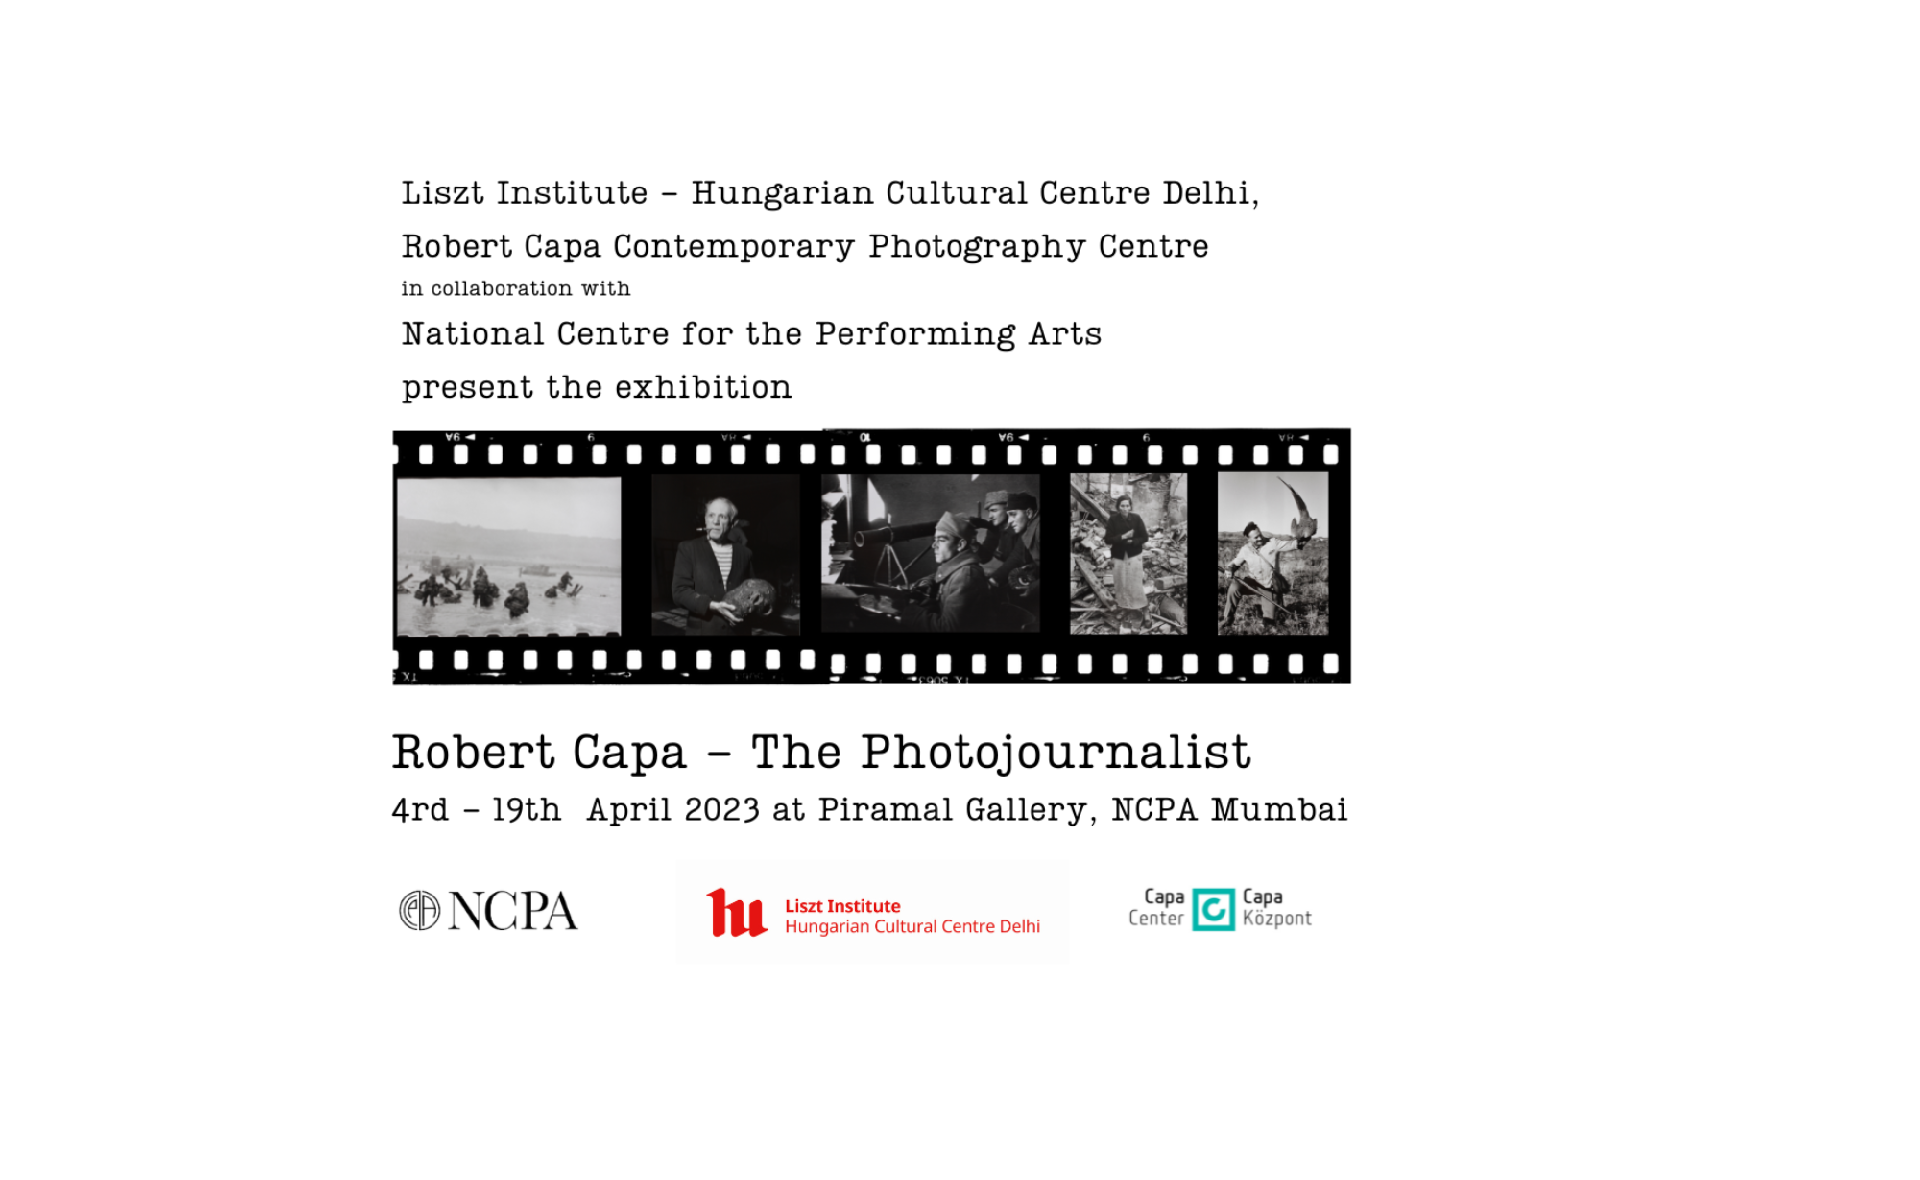 Robert Capa kiállítás nyílik Mumbai-ban